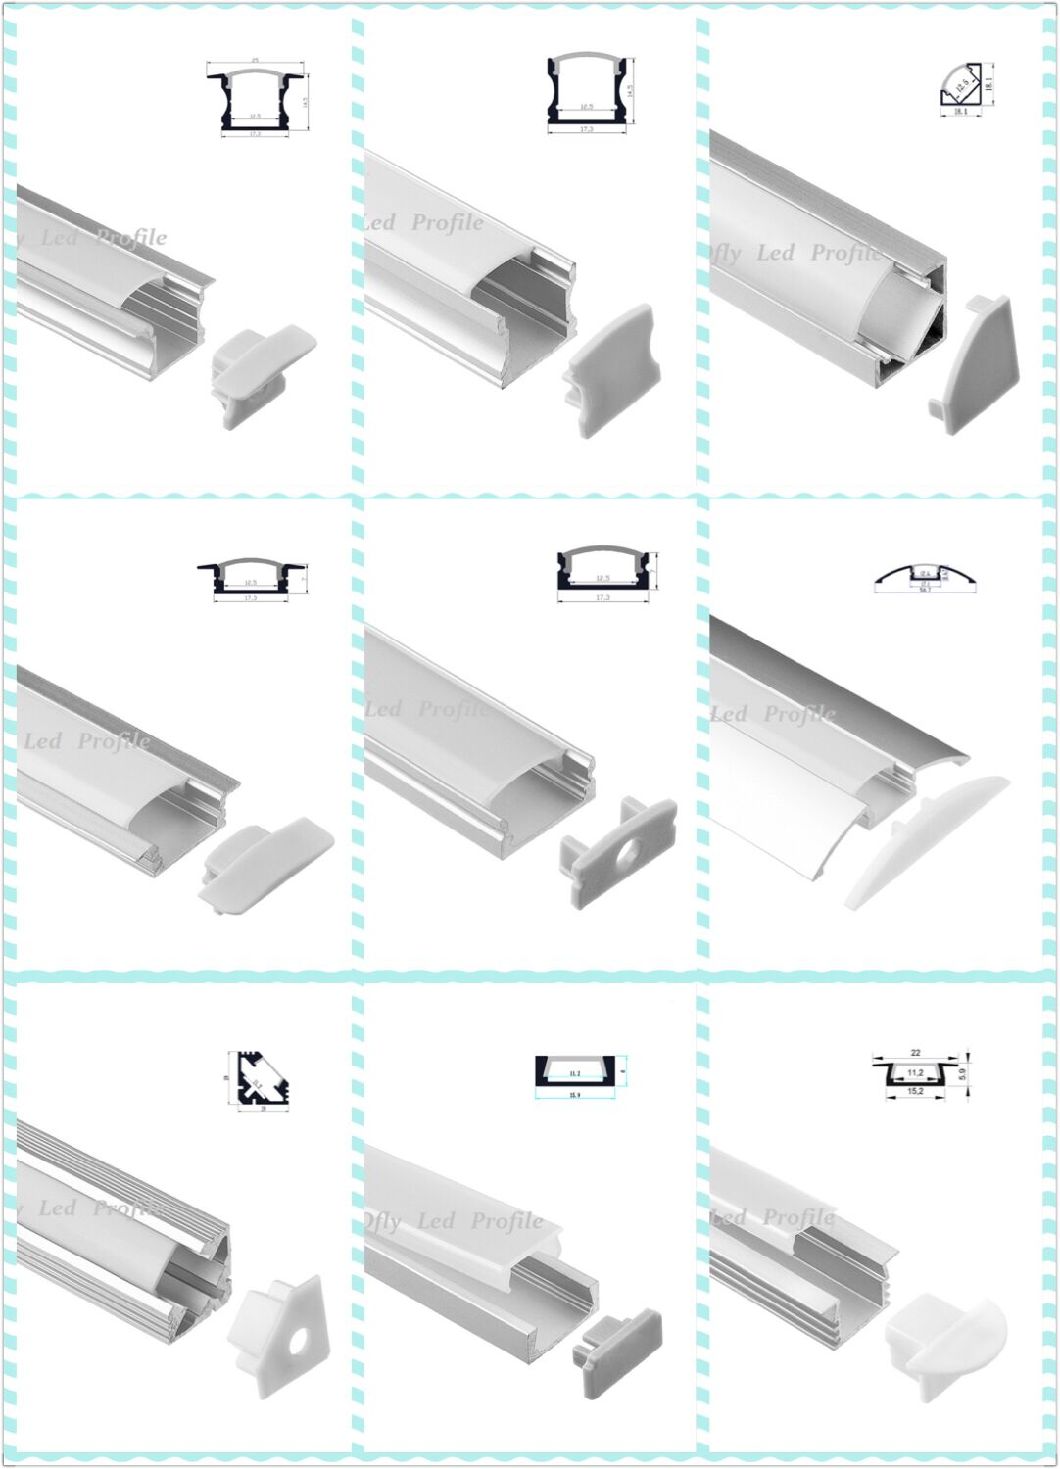 LED Aluminum Profile LED Strip Light Plastic Cover, 2m Aluminium LED Profile Lighting Bar